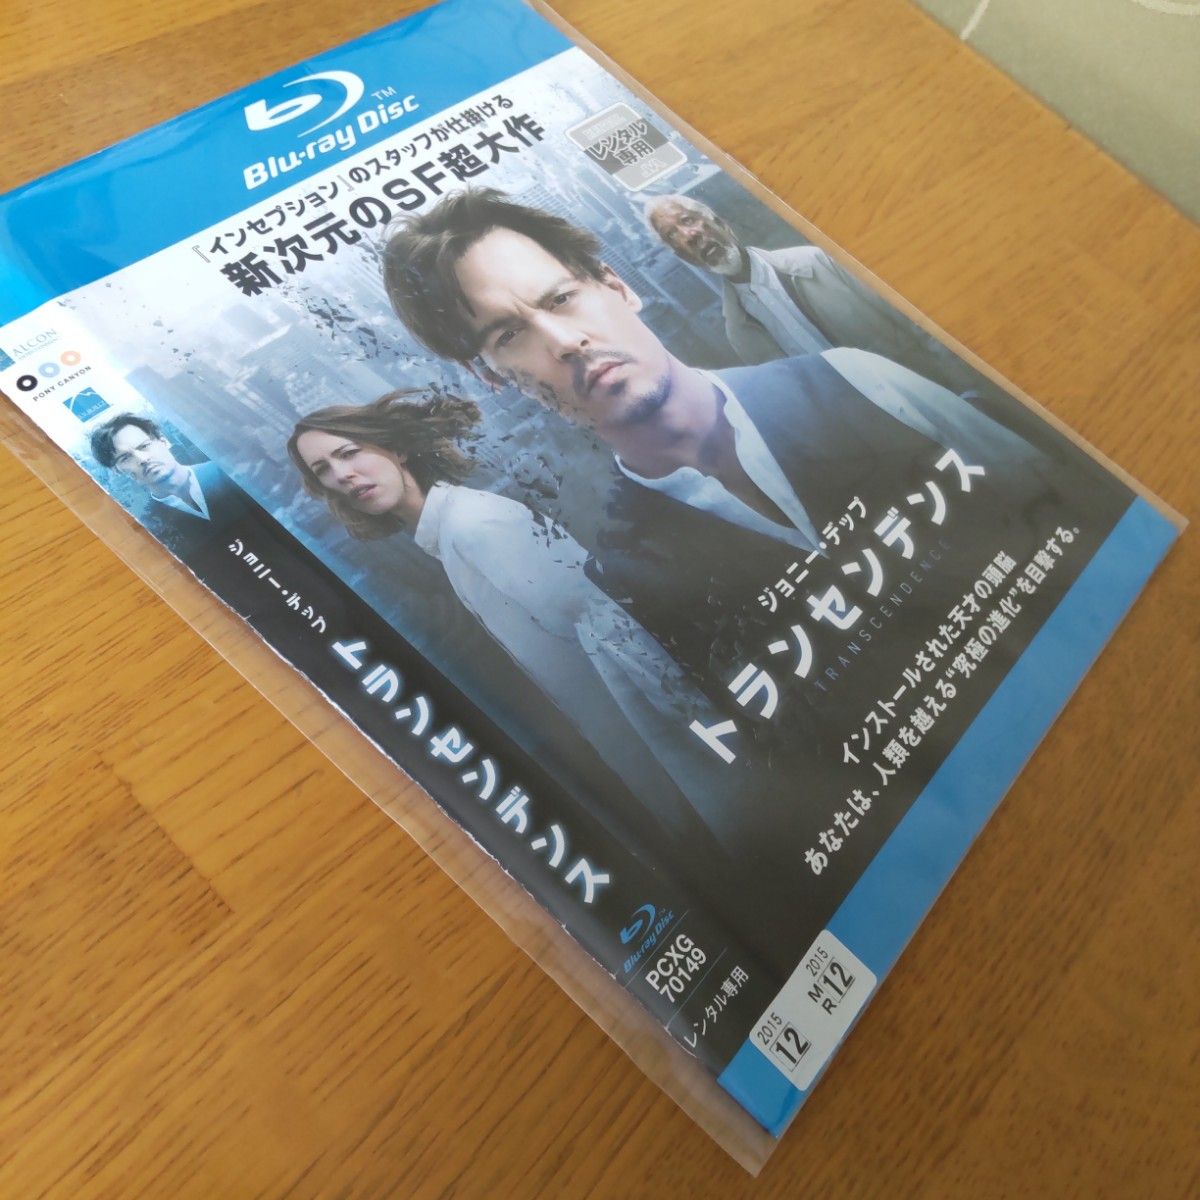 【中古・レンタルアップ・値下】トランセンデンス('14米) Blu-ray ジョニー・デップ、モーガン・フリーマン